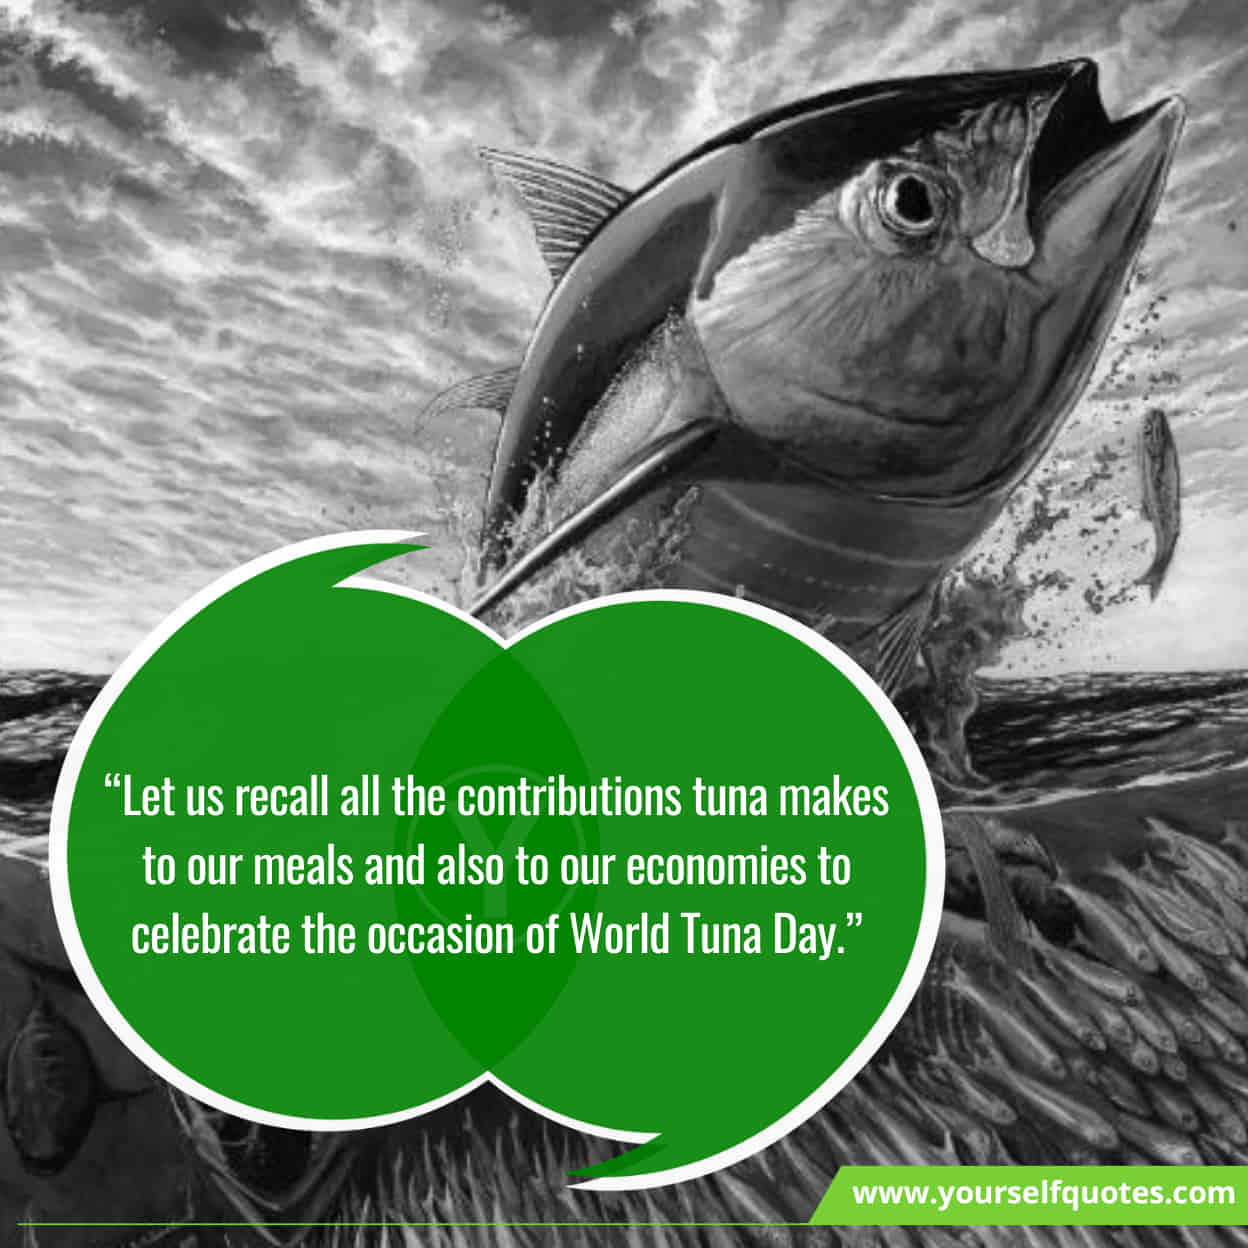 World Tuna Day Messages & Slogans